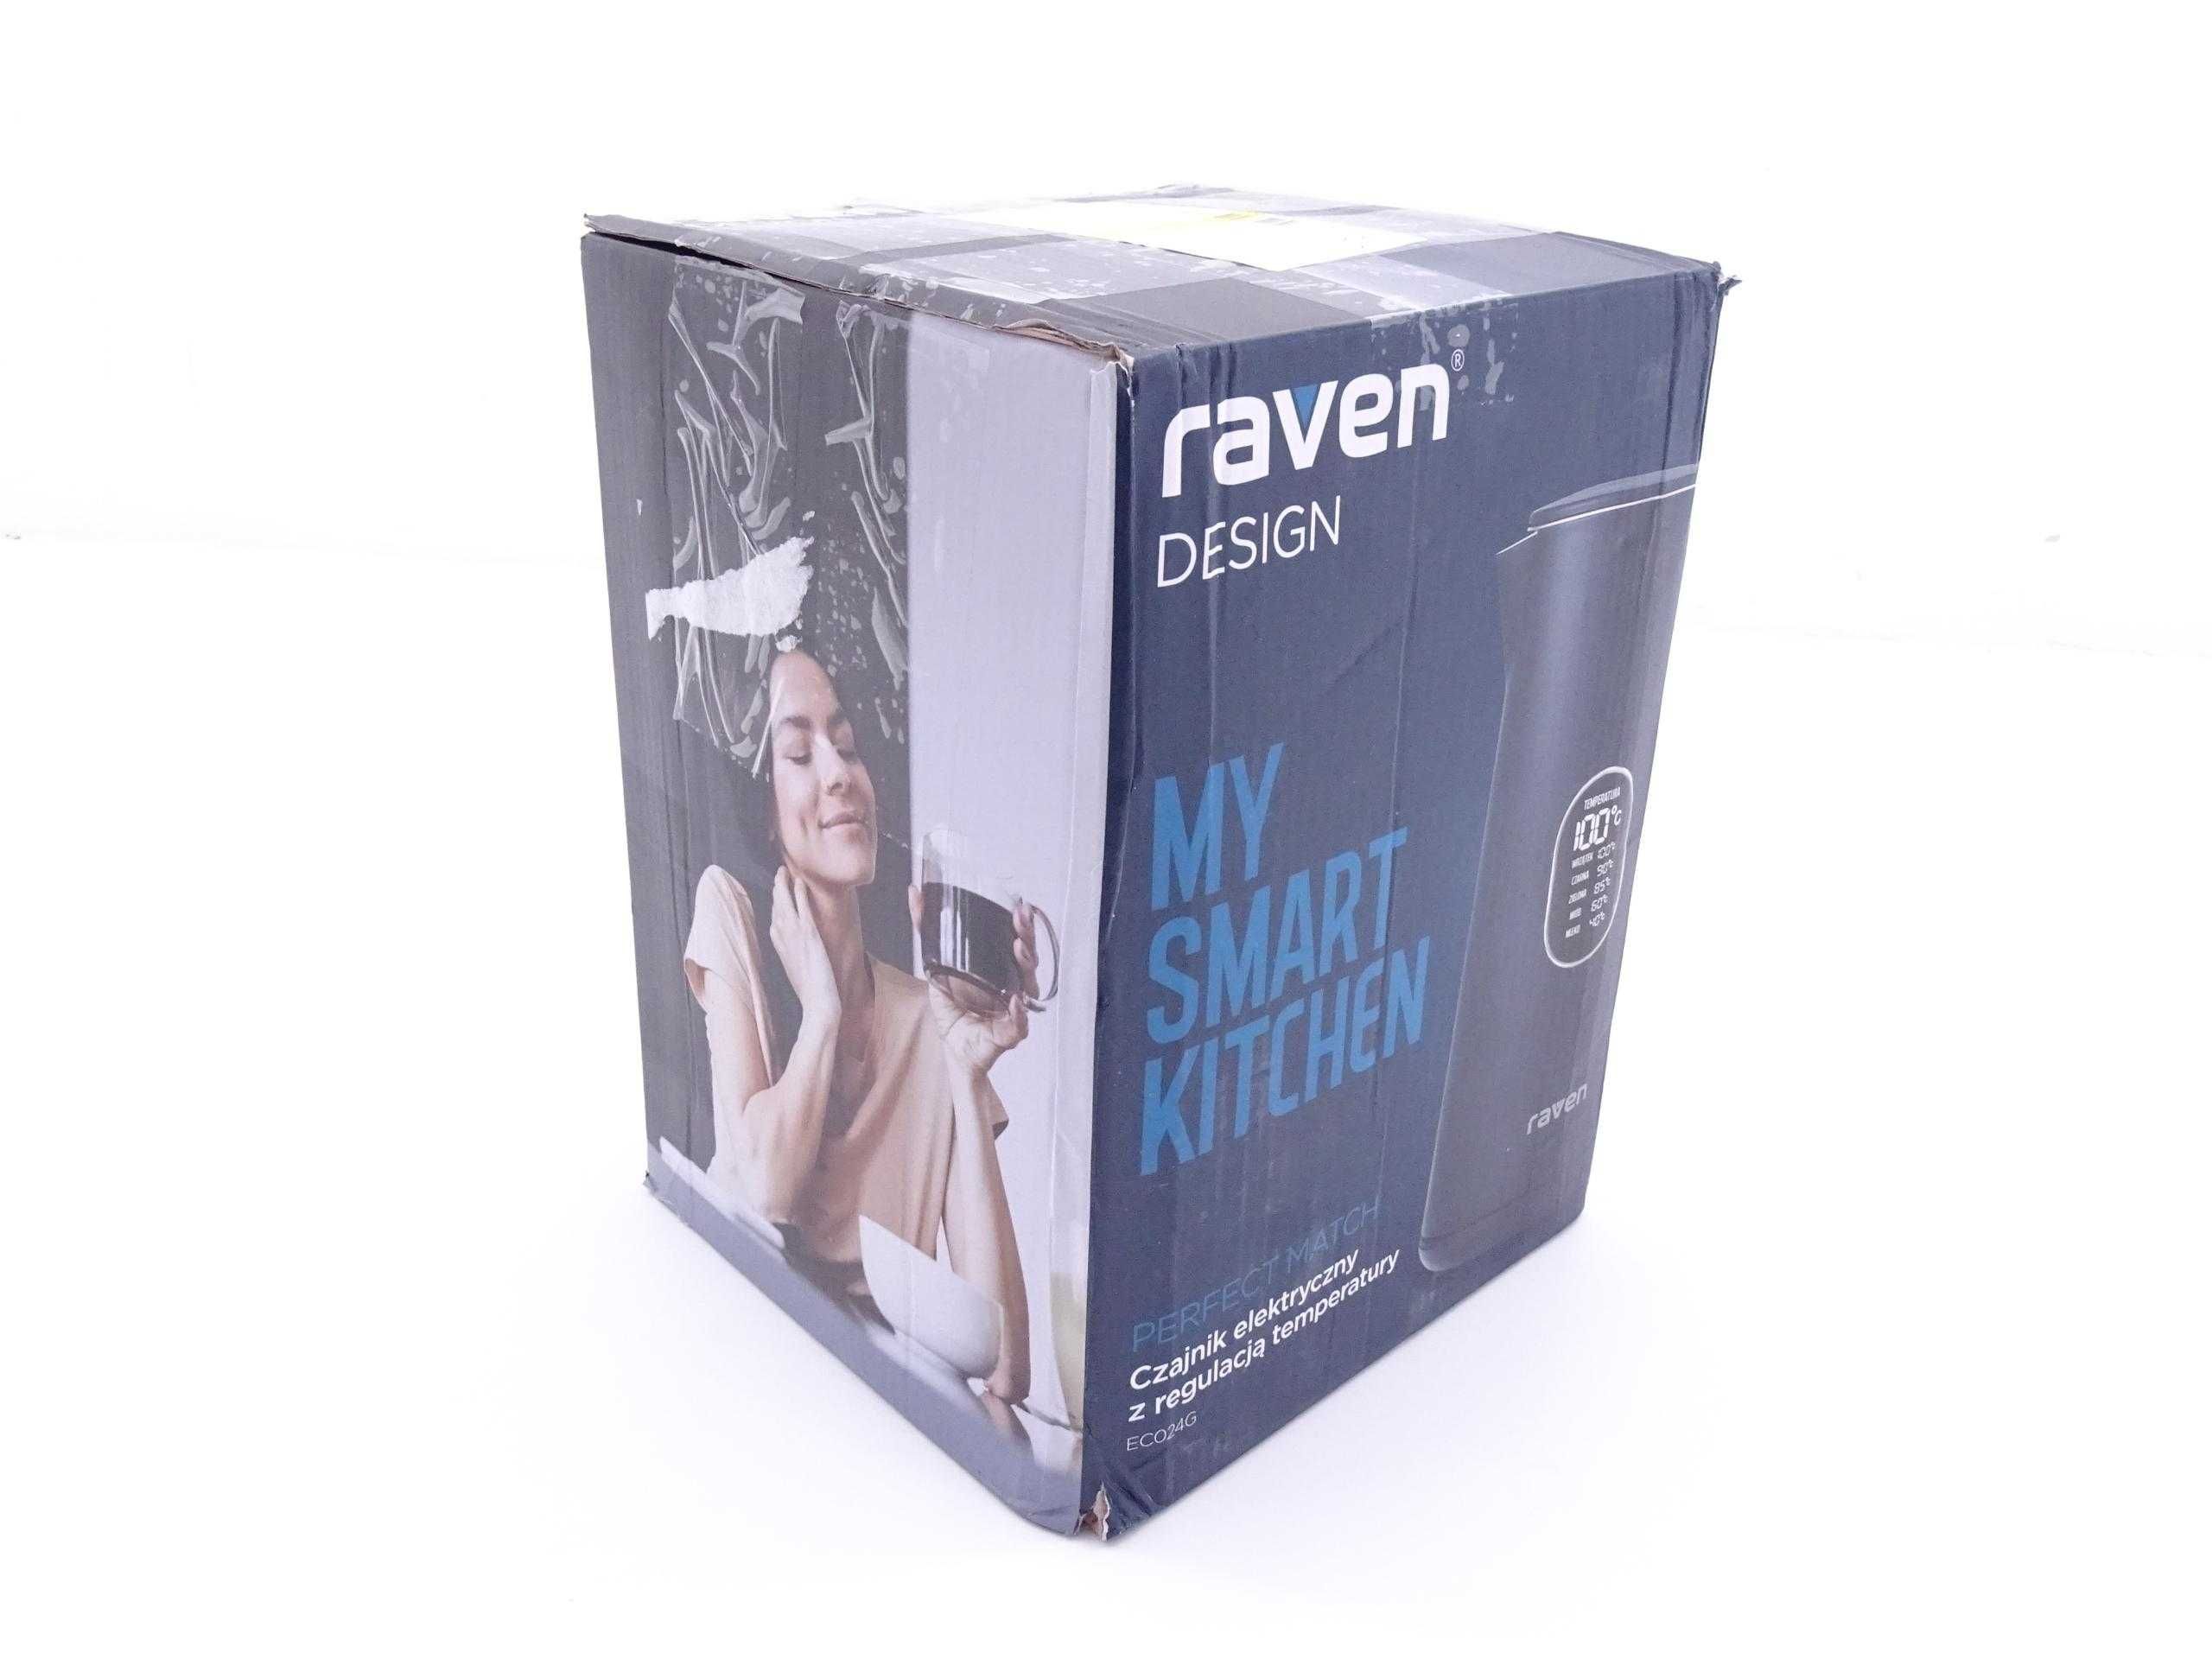 Czajnik Raven EC024G 1,5l 1800W Regulacja temperatury granatowy nowy